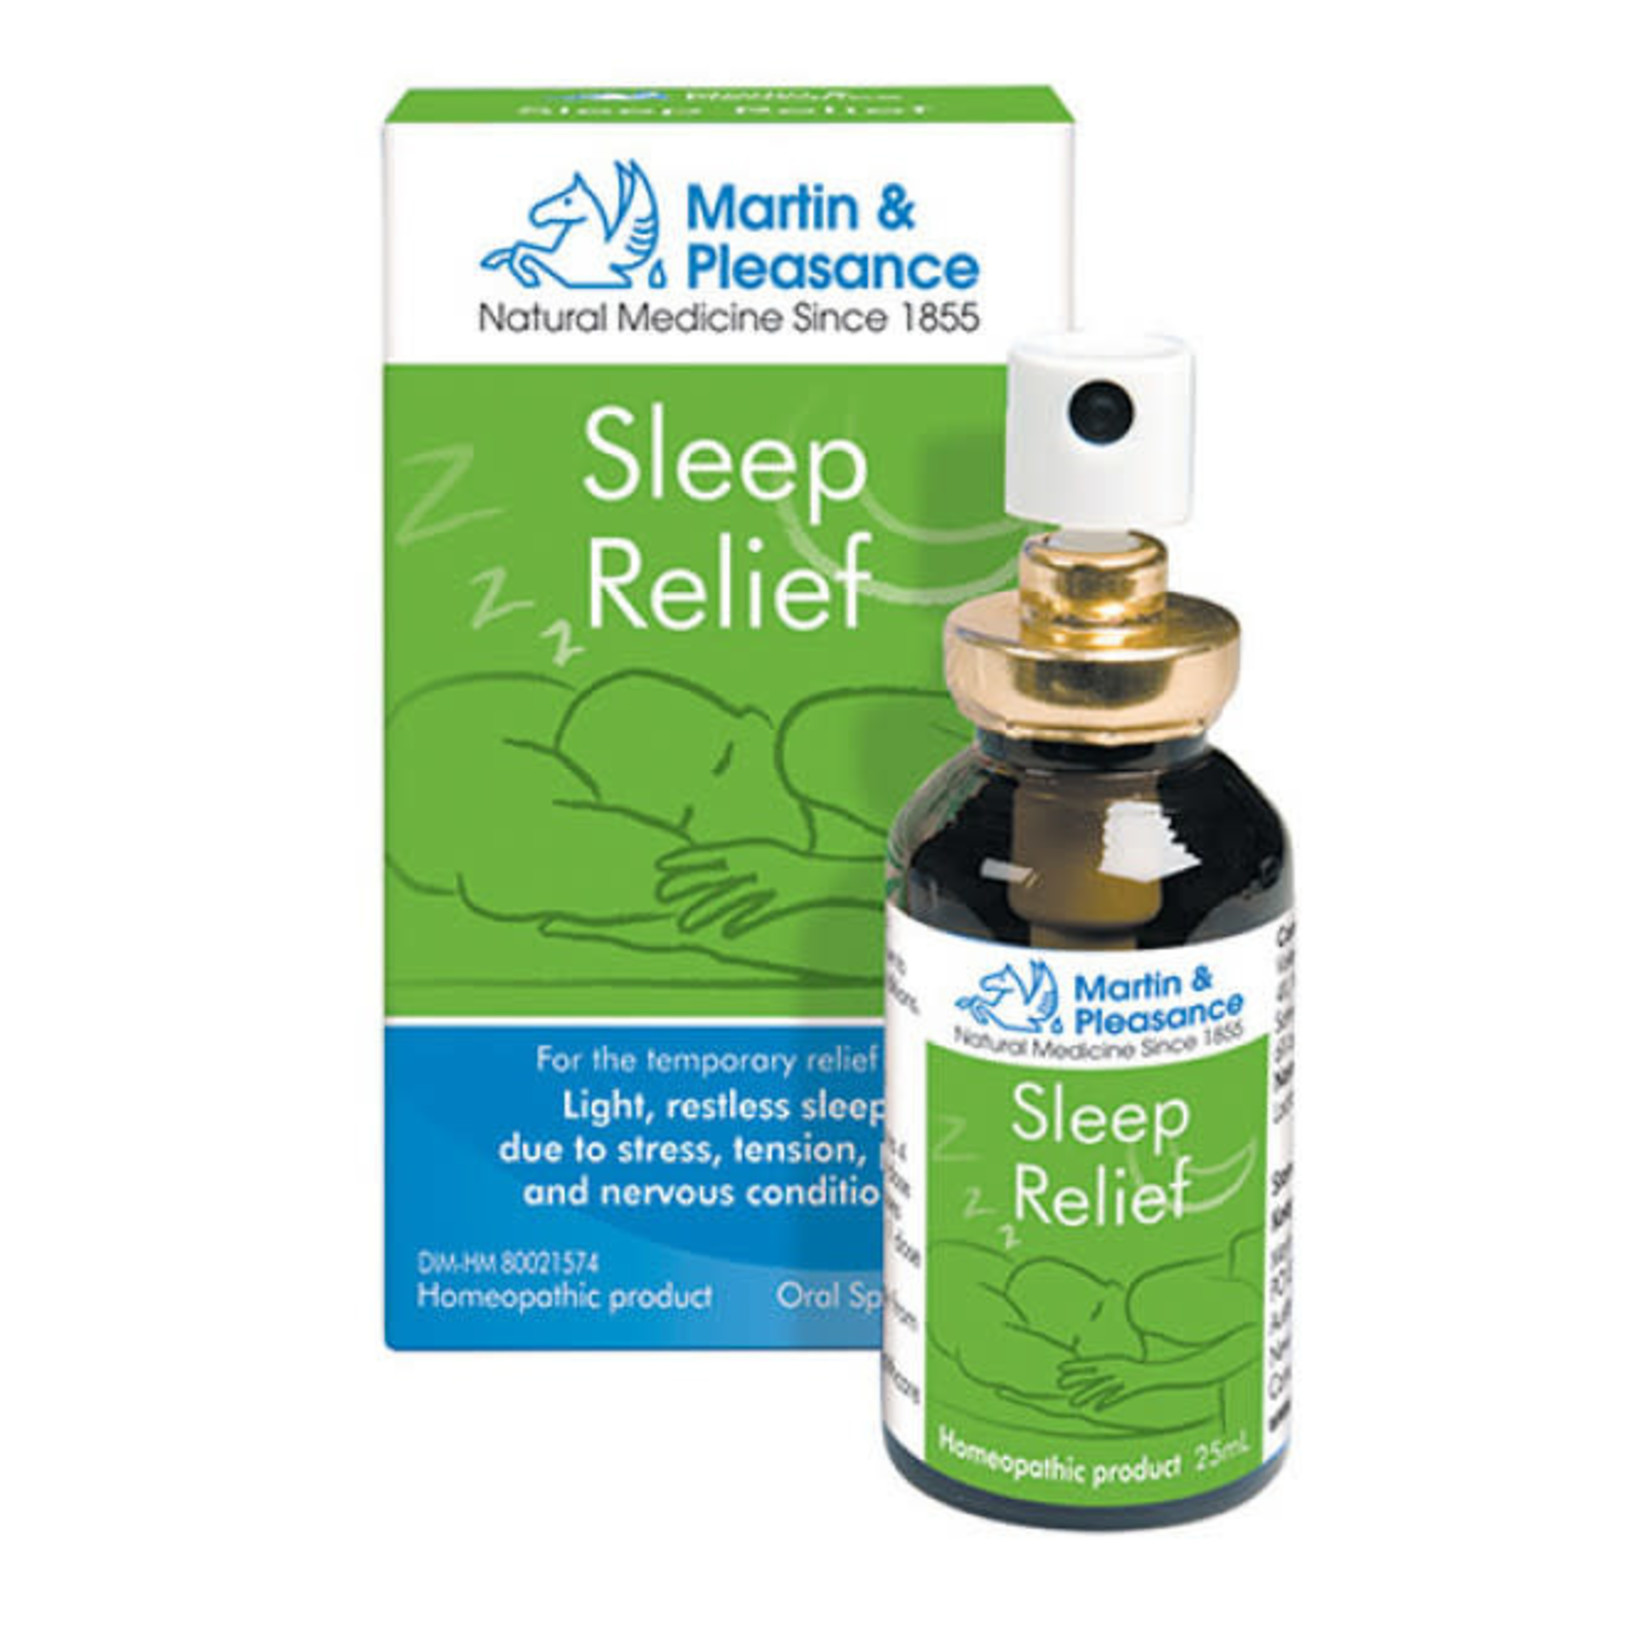 Martin & Pleasance Martin & Pleasance Sleep Relief 25ml